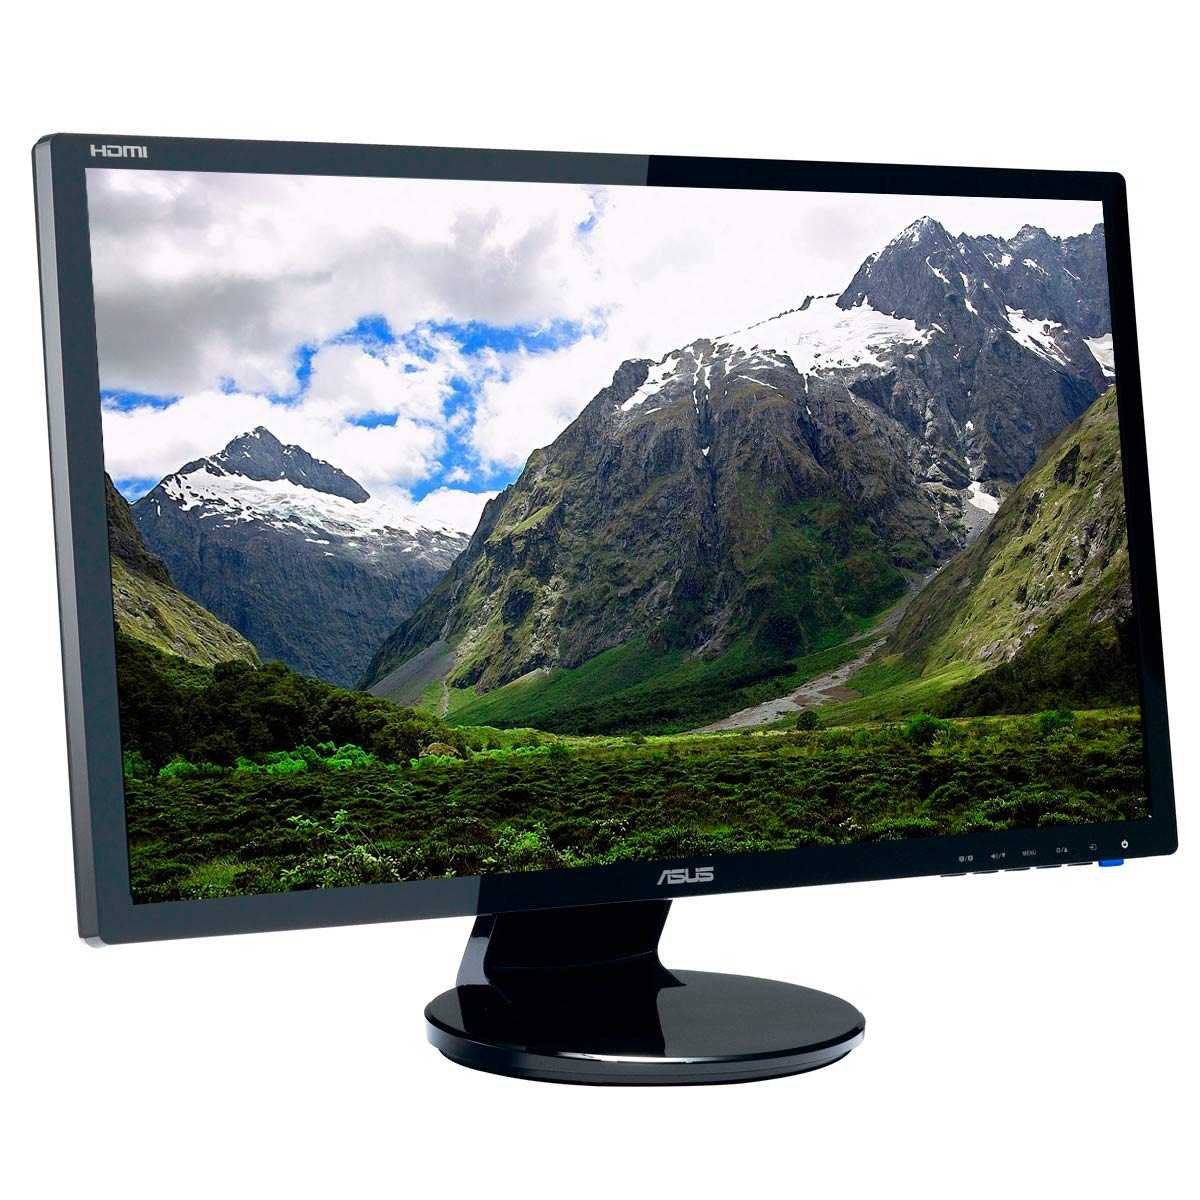 Монитор Asus VE228T - подробные характеристики обзоры видео фото Цены в интернет-магазинах где можно купить монитор Asus VE228T